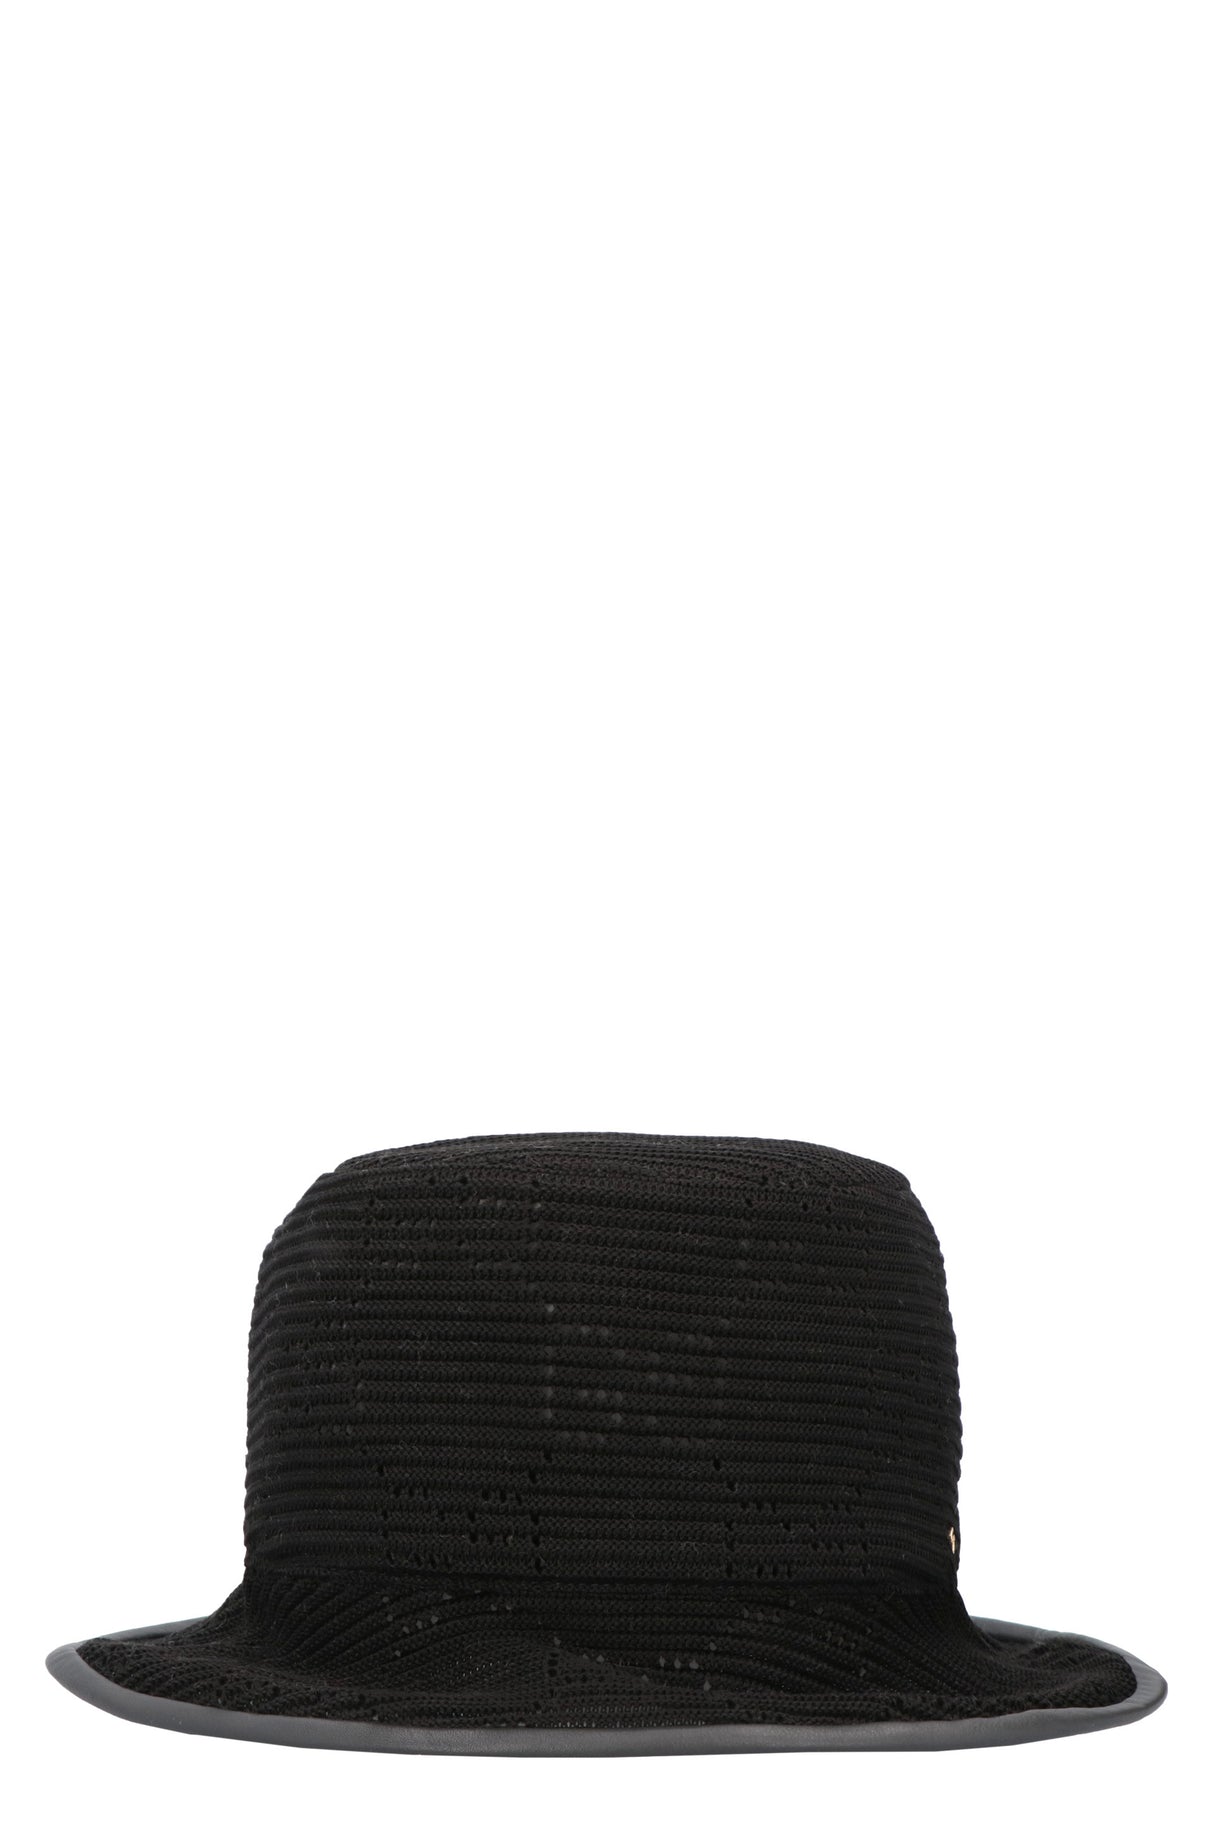 قبعة صوفية سوداء مزينة بجلد للنساء